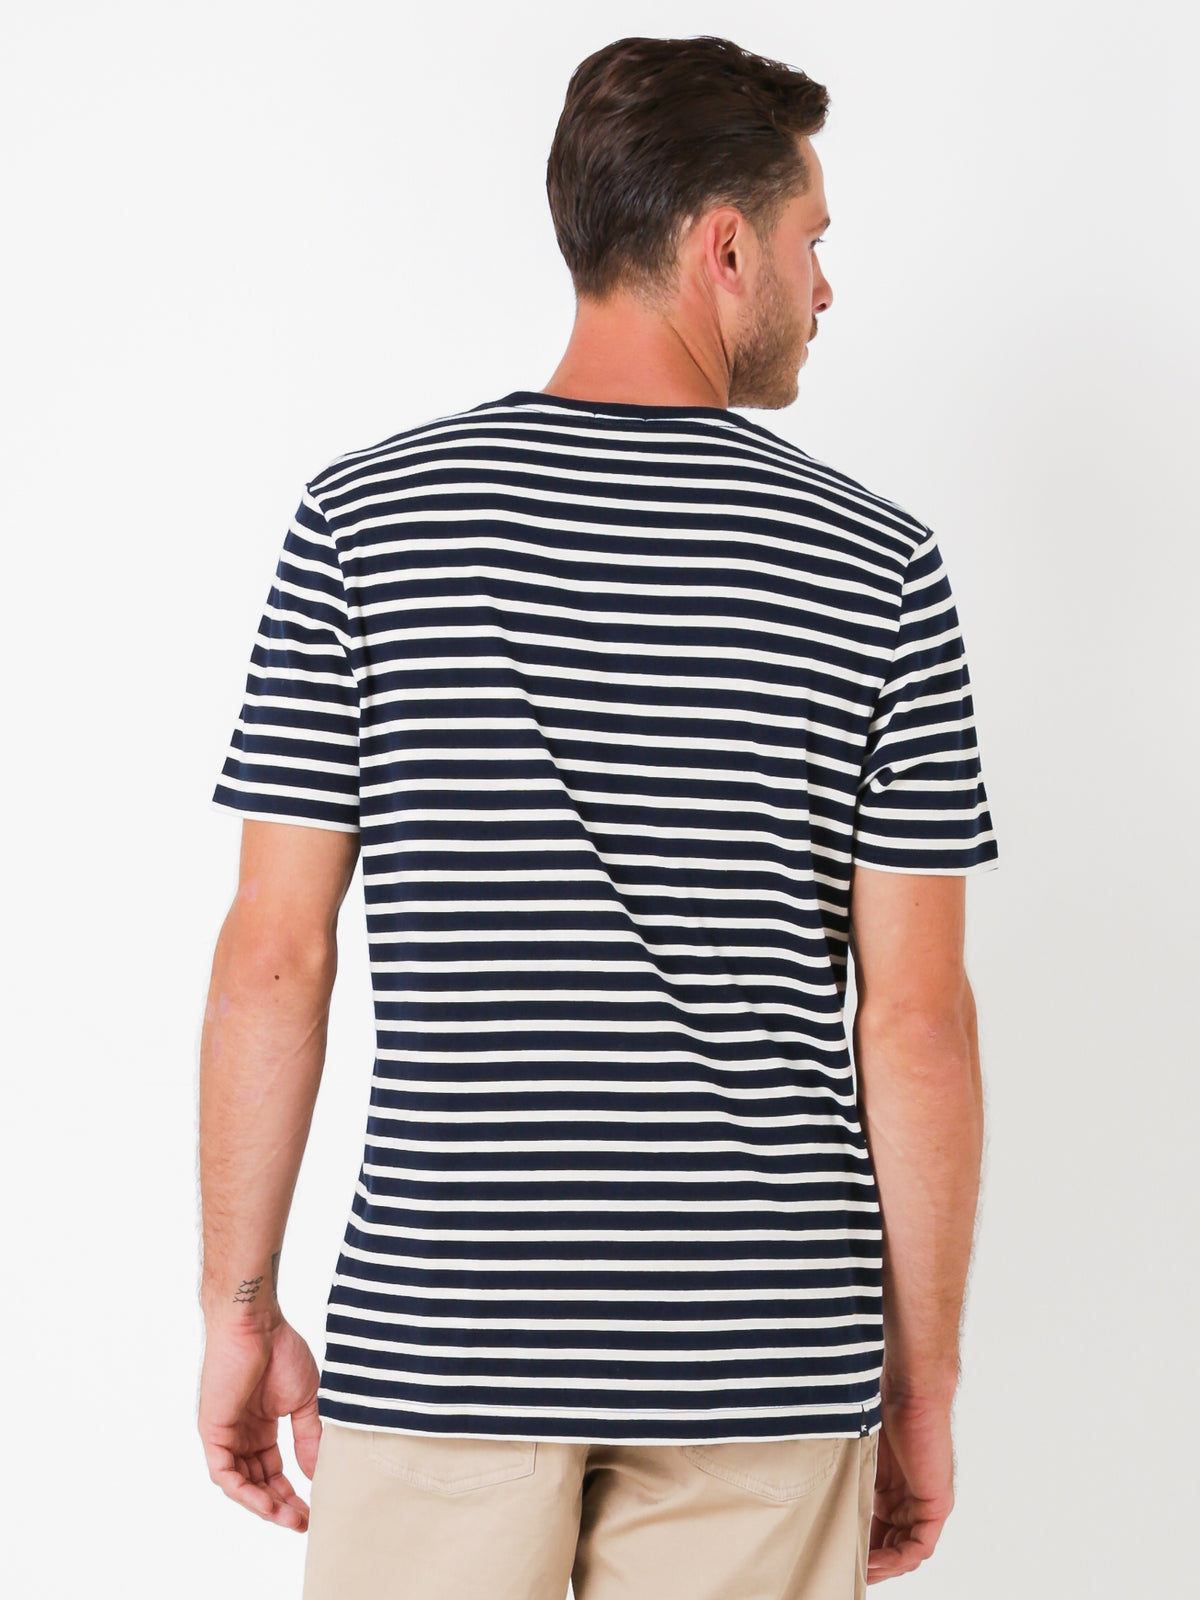 Stripe Pocket T-Shirt in Dark Navy